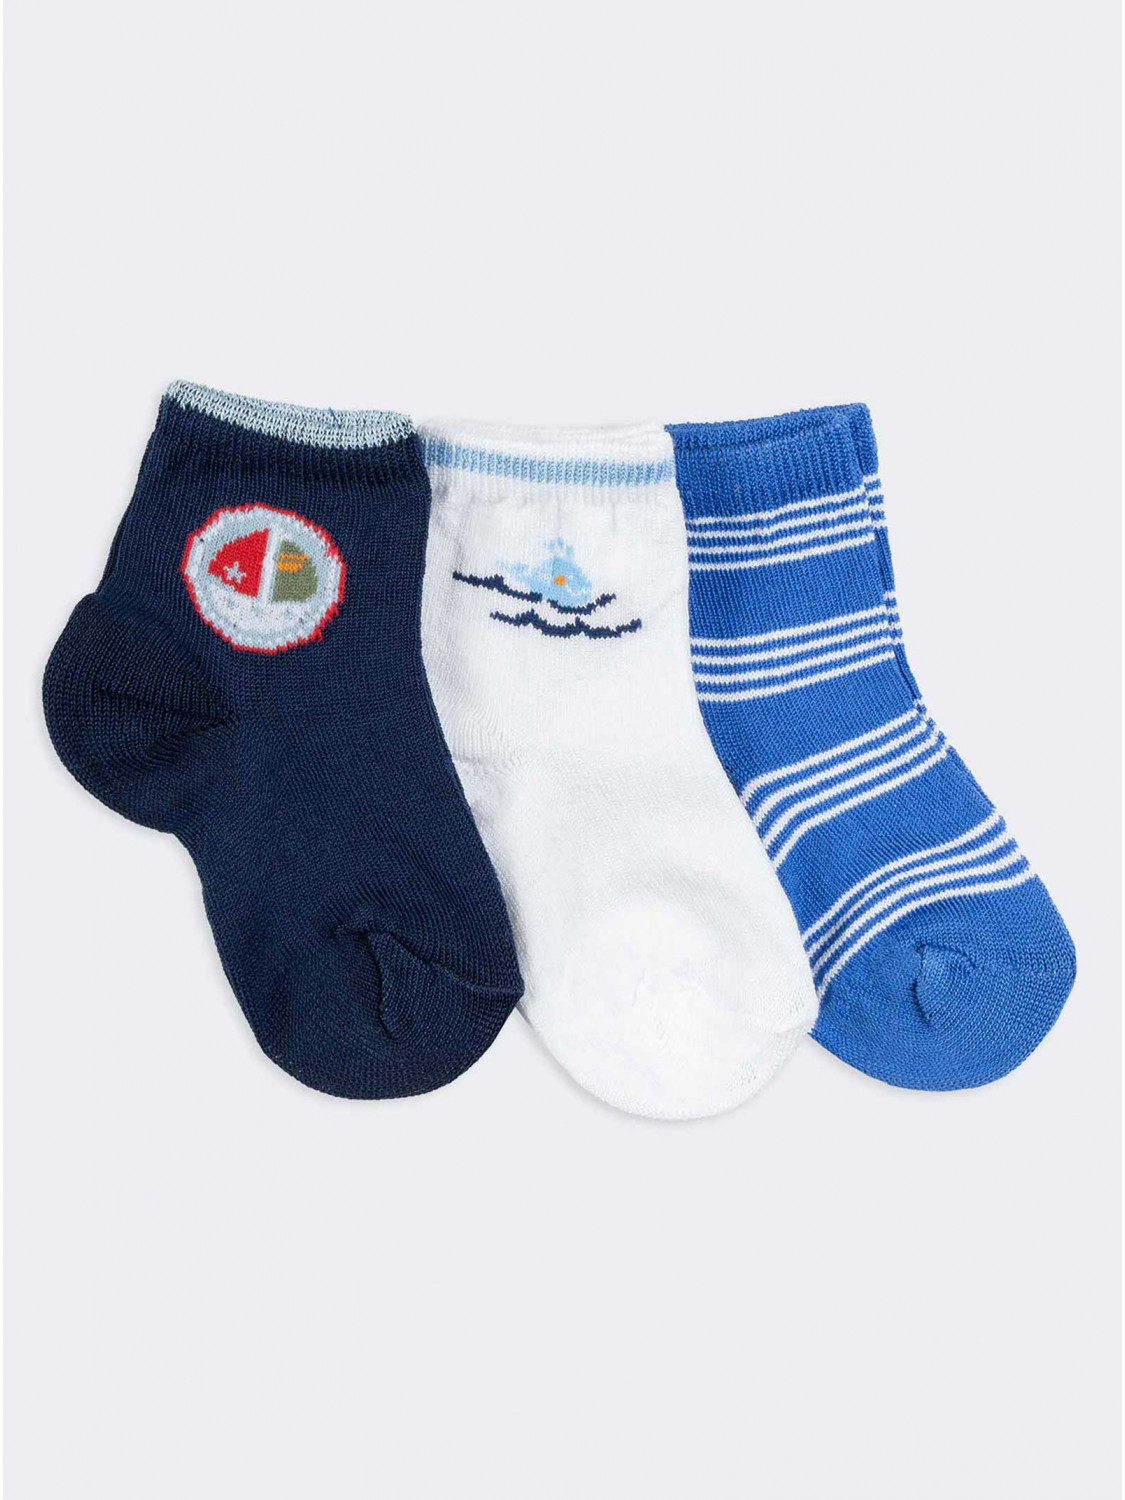 Tris crew patterned socks newborn 